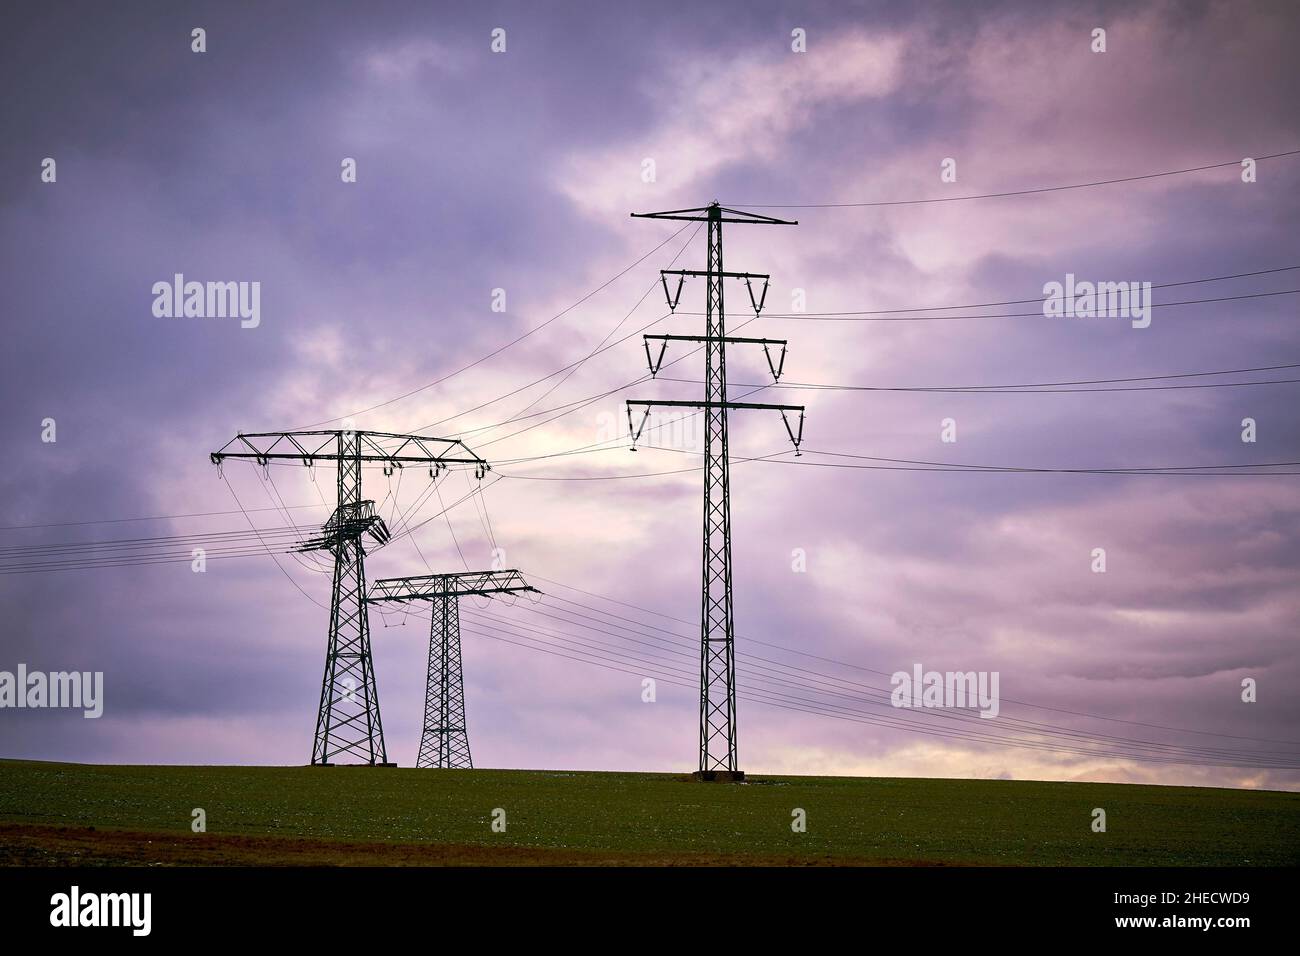 Hochspannung Strommasten mit elektrischen Leitungen mit dunklen Wolken Stock Photo